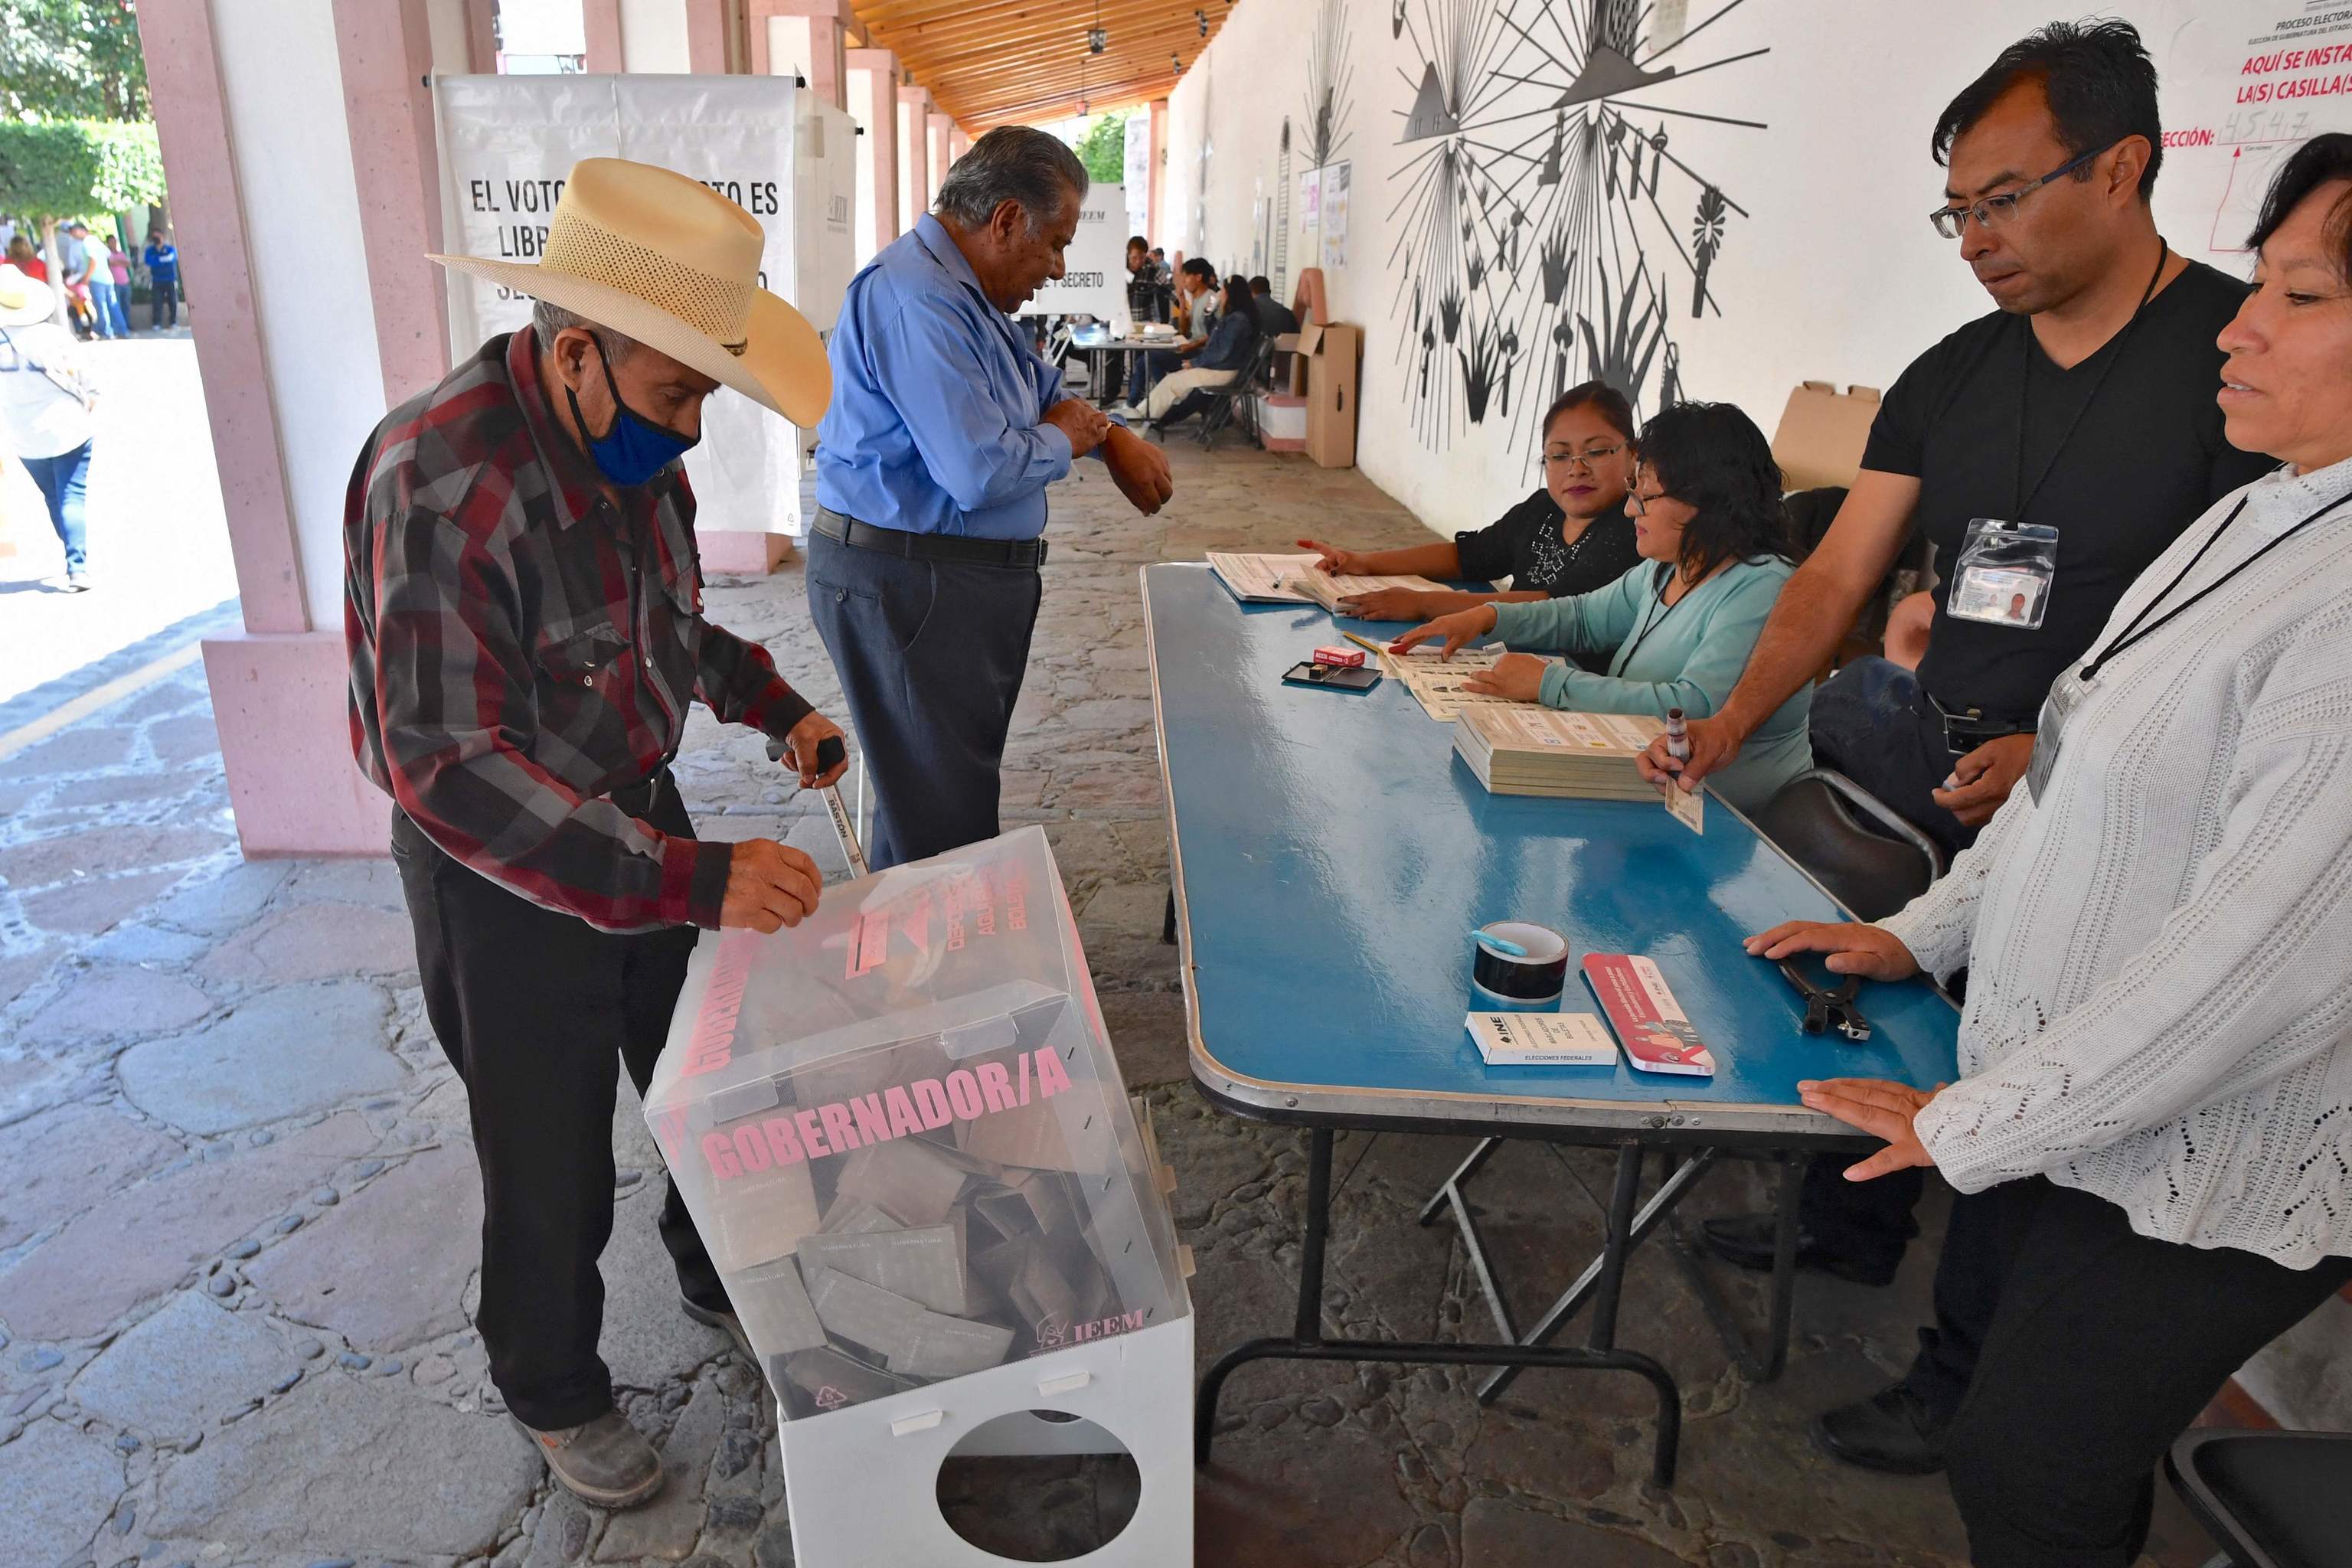 El partido de López Obrador arrebata al PRI su principal bastión territorial en México